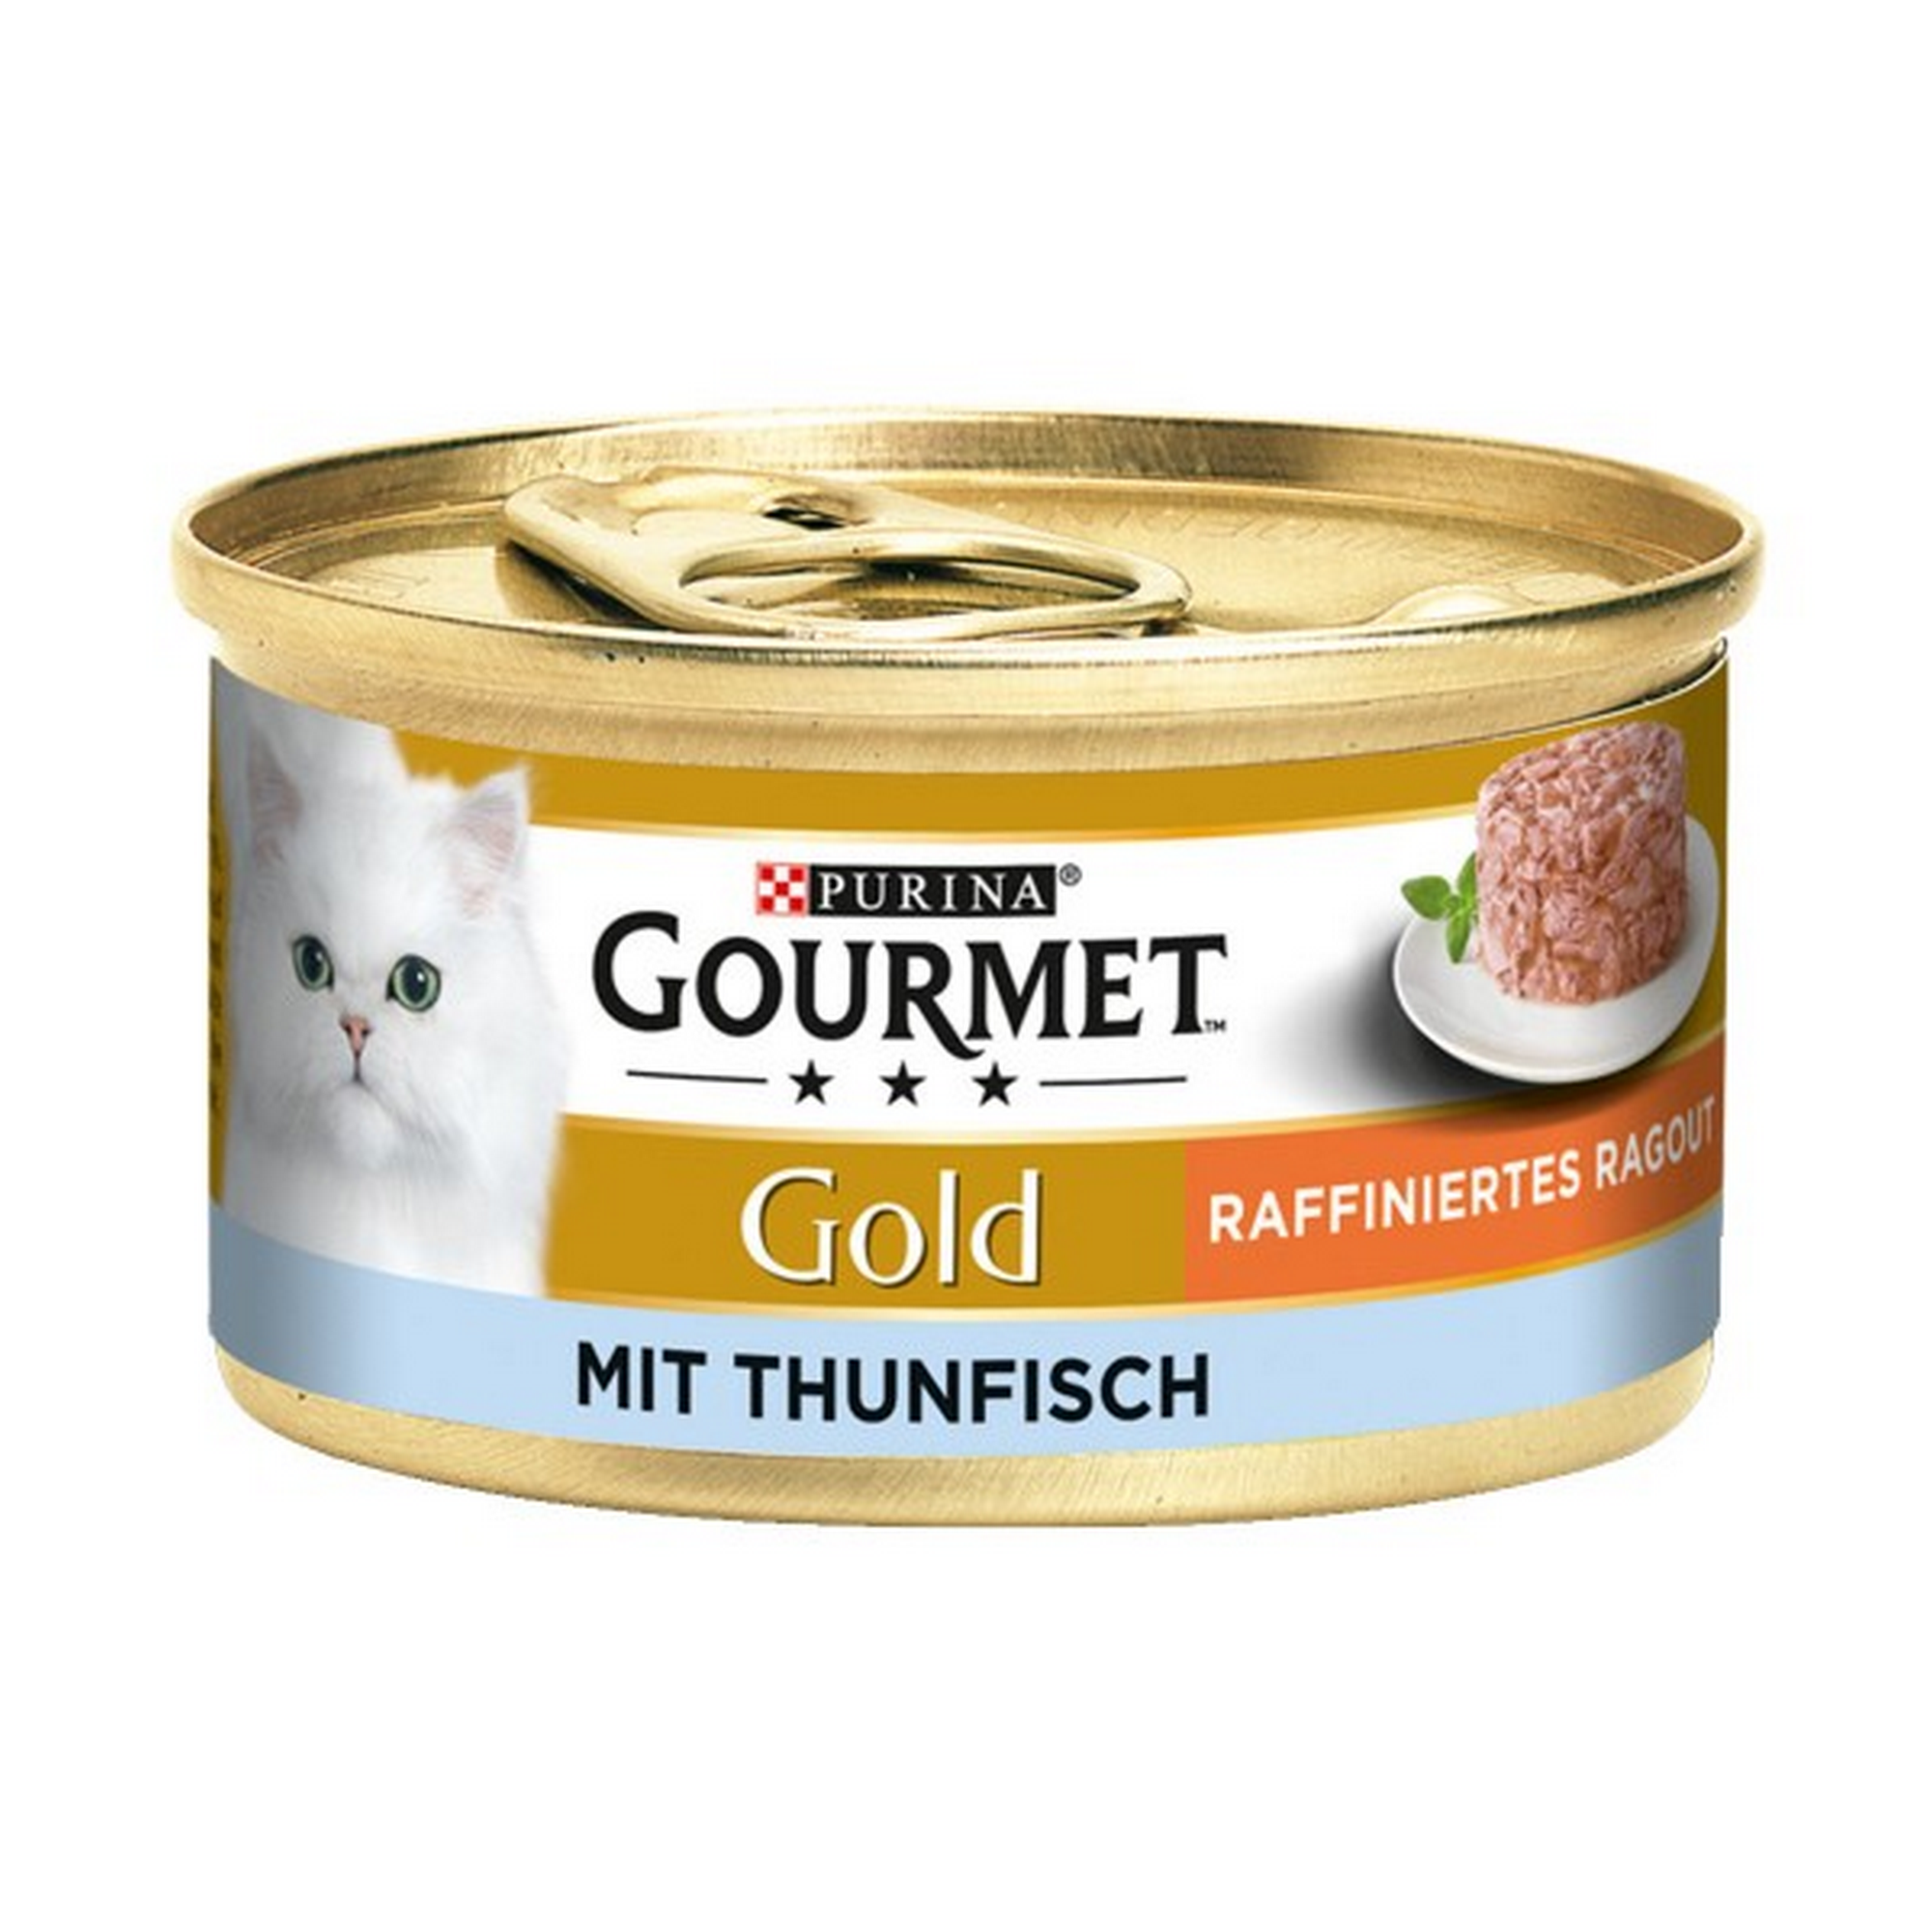 Katzennassfutter 'Gold' raffiniertes Ragout mit Thunfisch 85 g + product picture